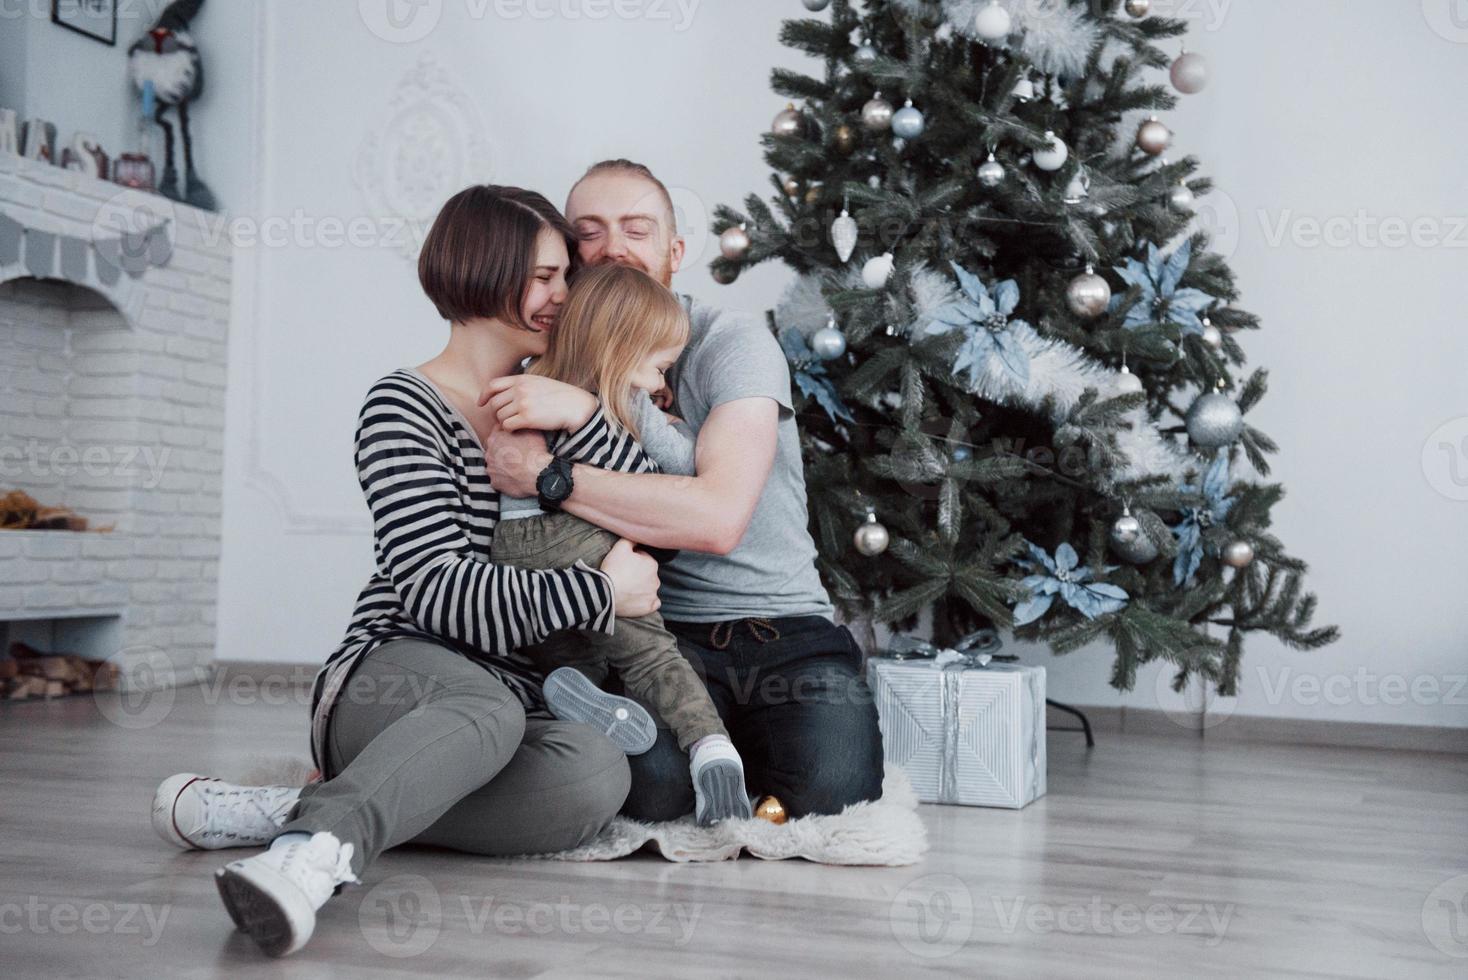 glückliche Familie zu Weihnachten am Morgen, die Geschenke zusammen in der Nähe des Tannenbaums öffnet. das Konzept von Familienglück und Wohlbefinden foto